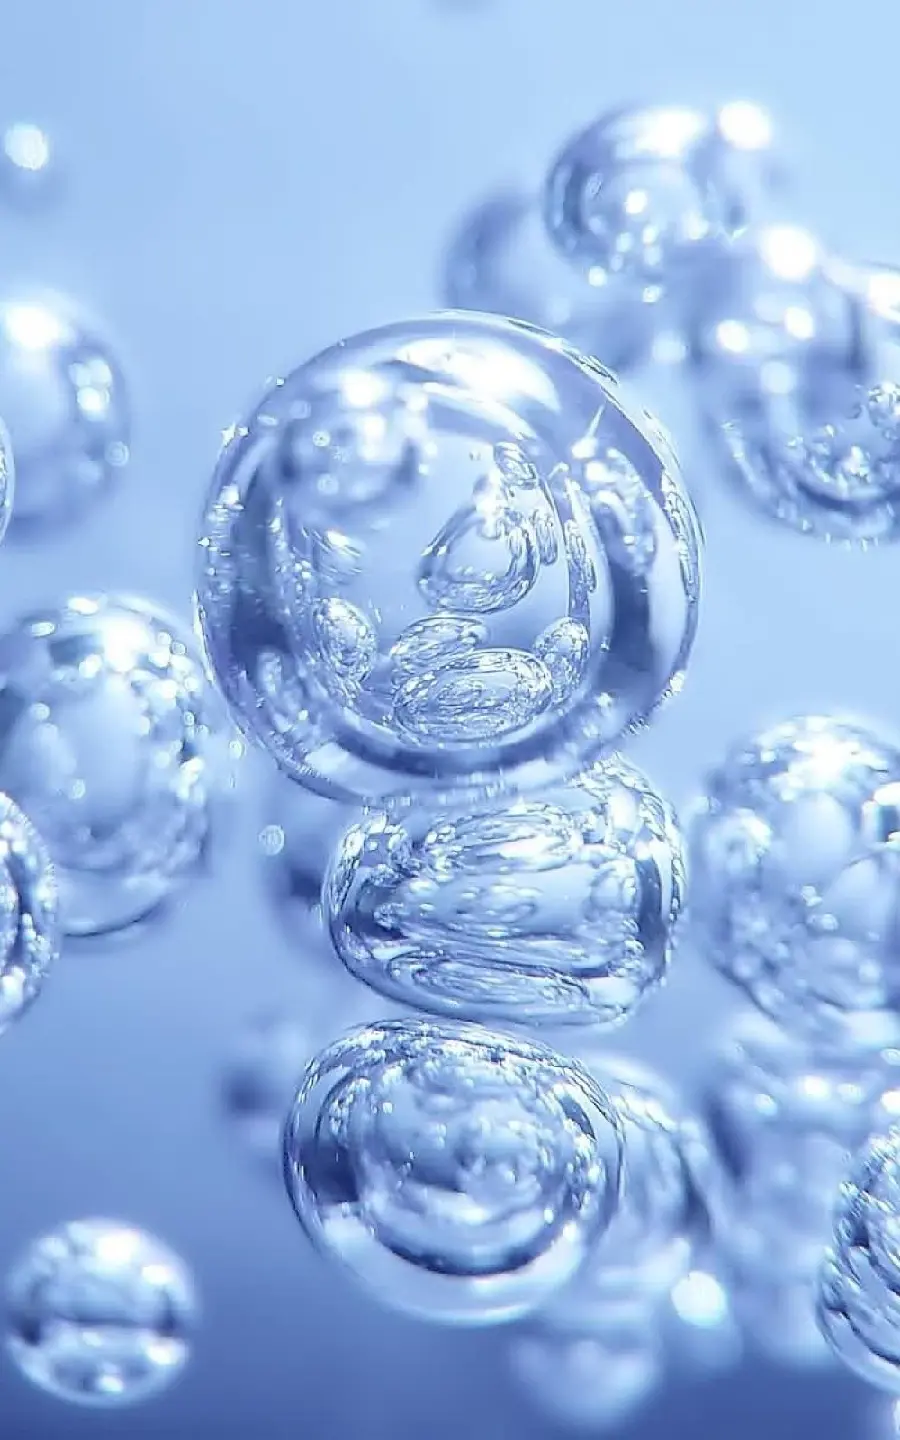 حباب آب انتزاعی با کیفیت بالا و رایگان